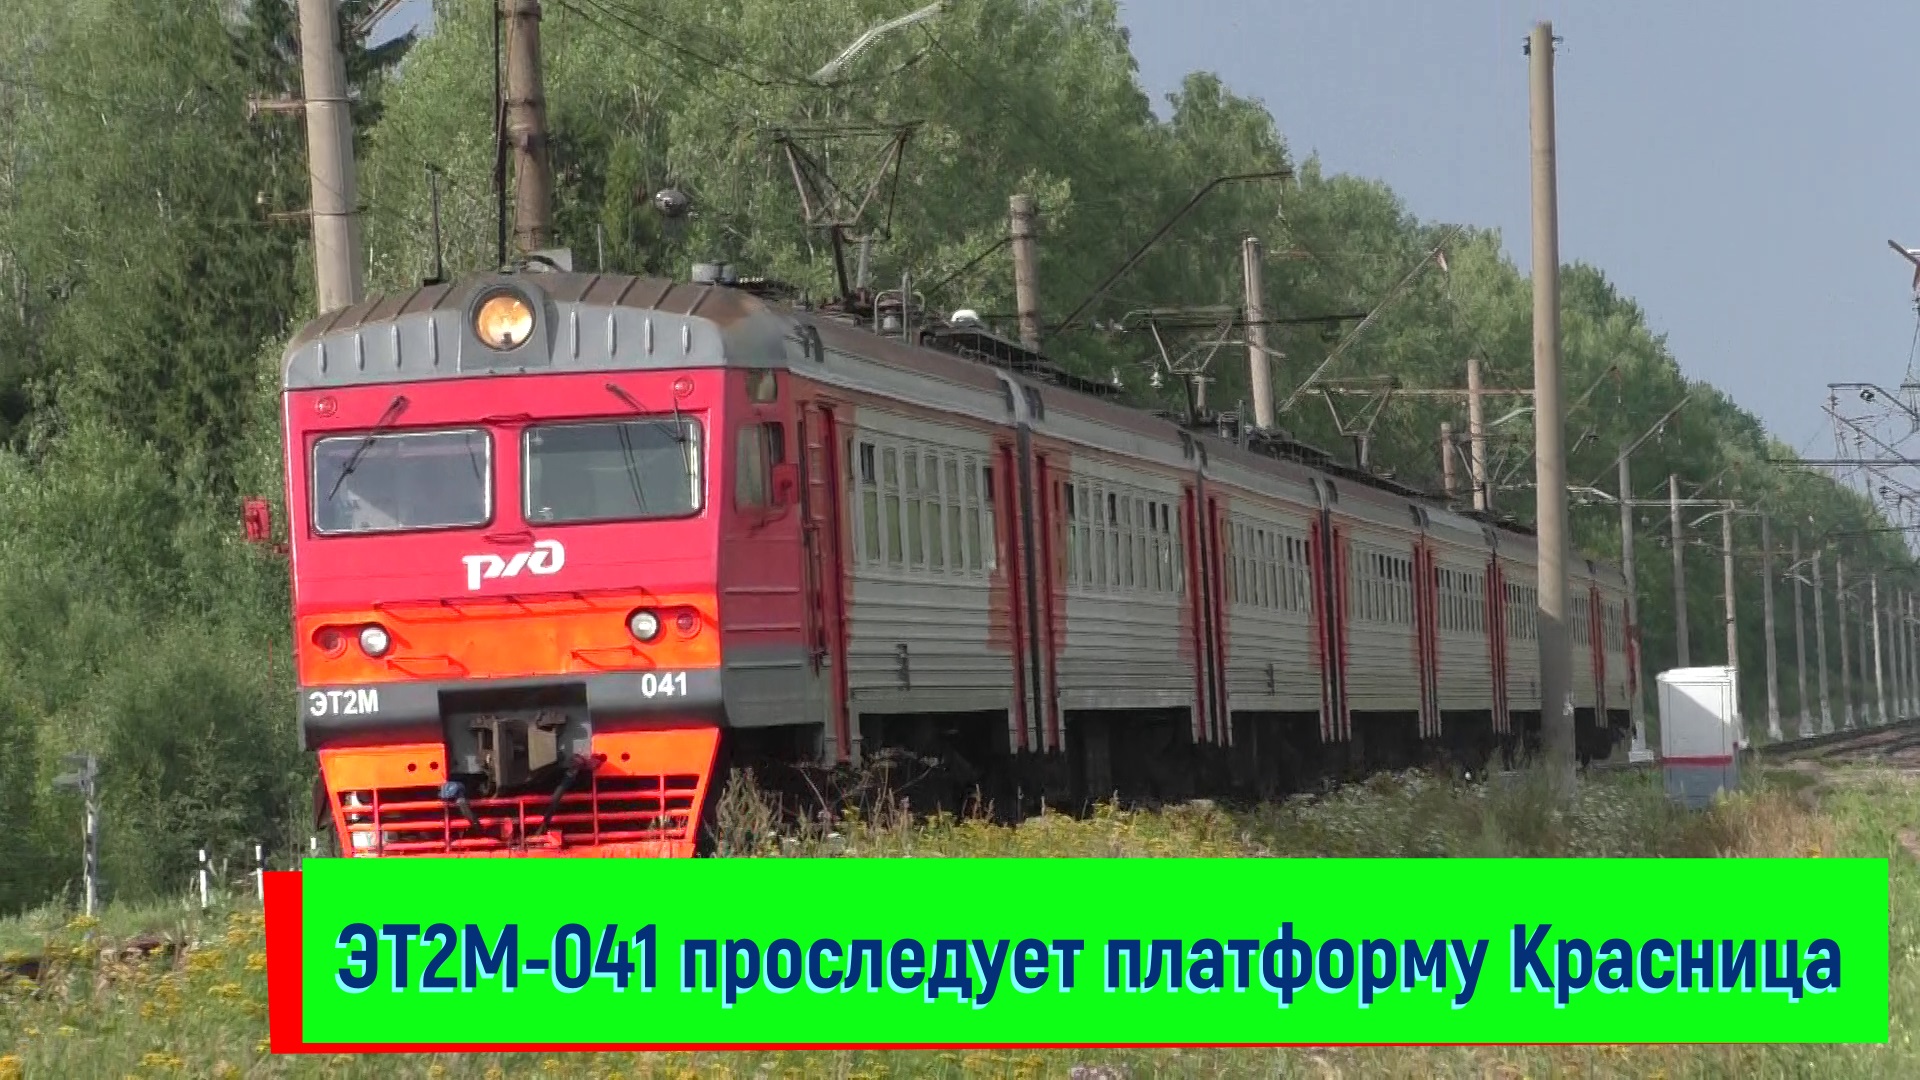 Электропоезд ЭТ2М-041 проследует платформу Красница | ET2M-041, Krasnitsa platform